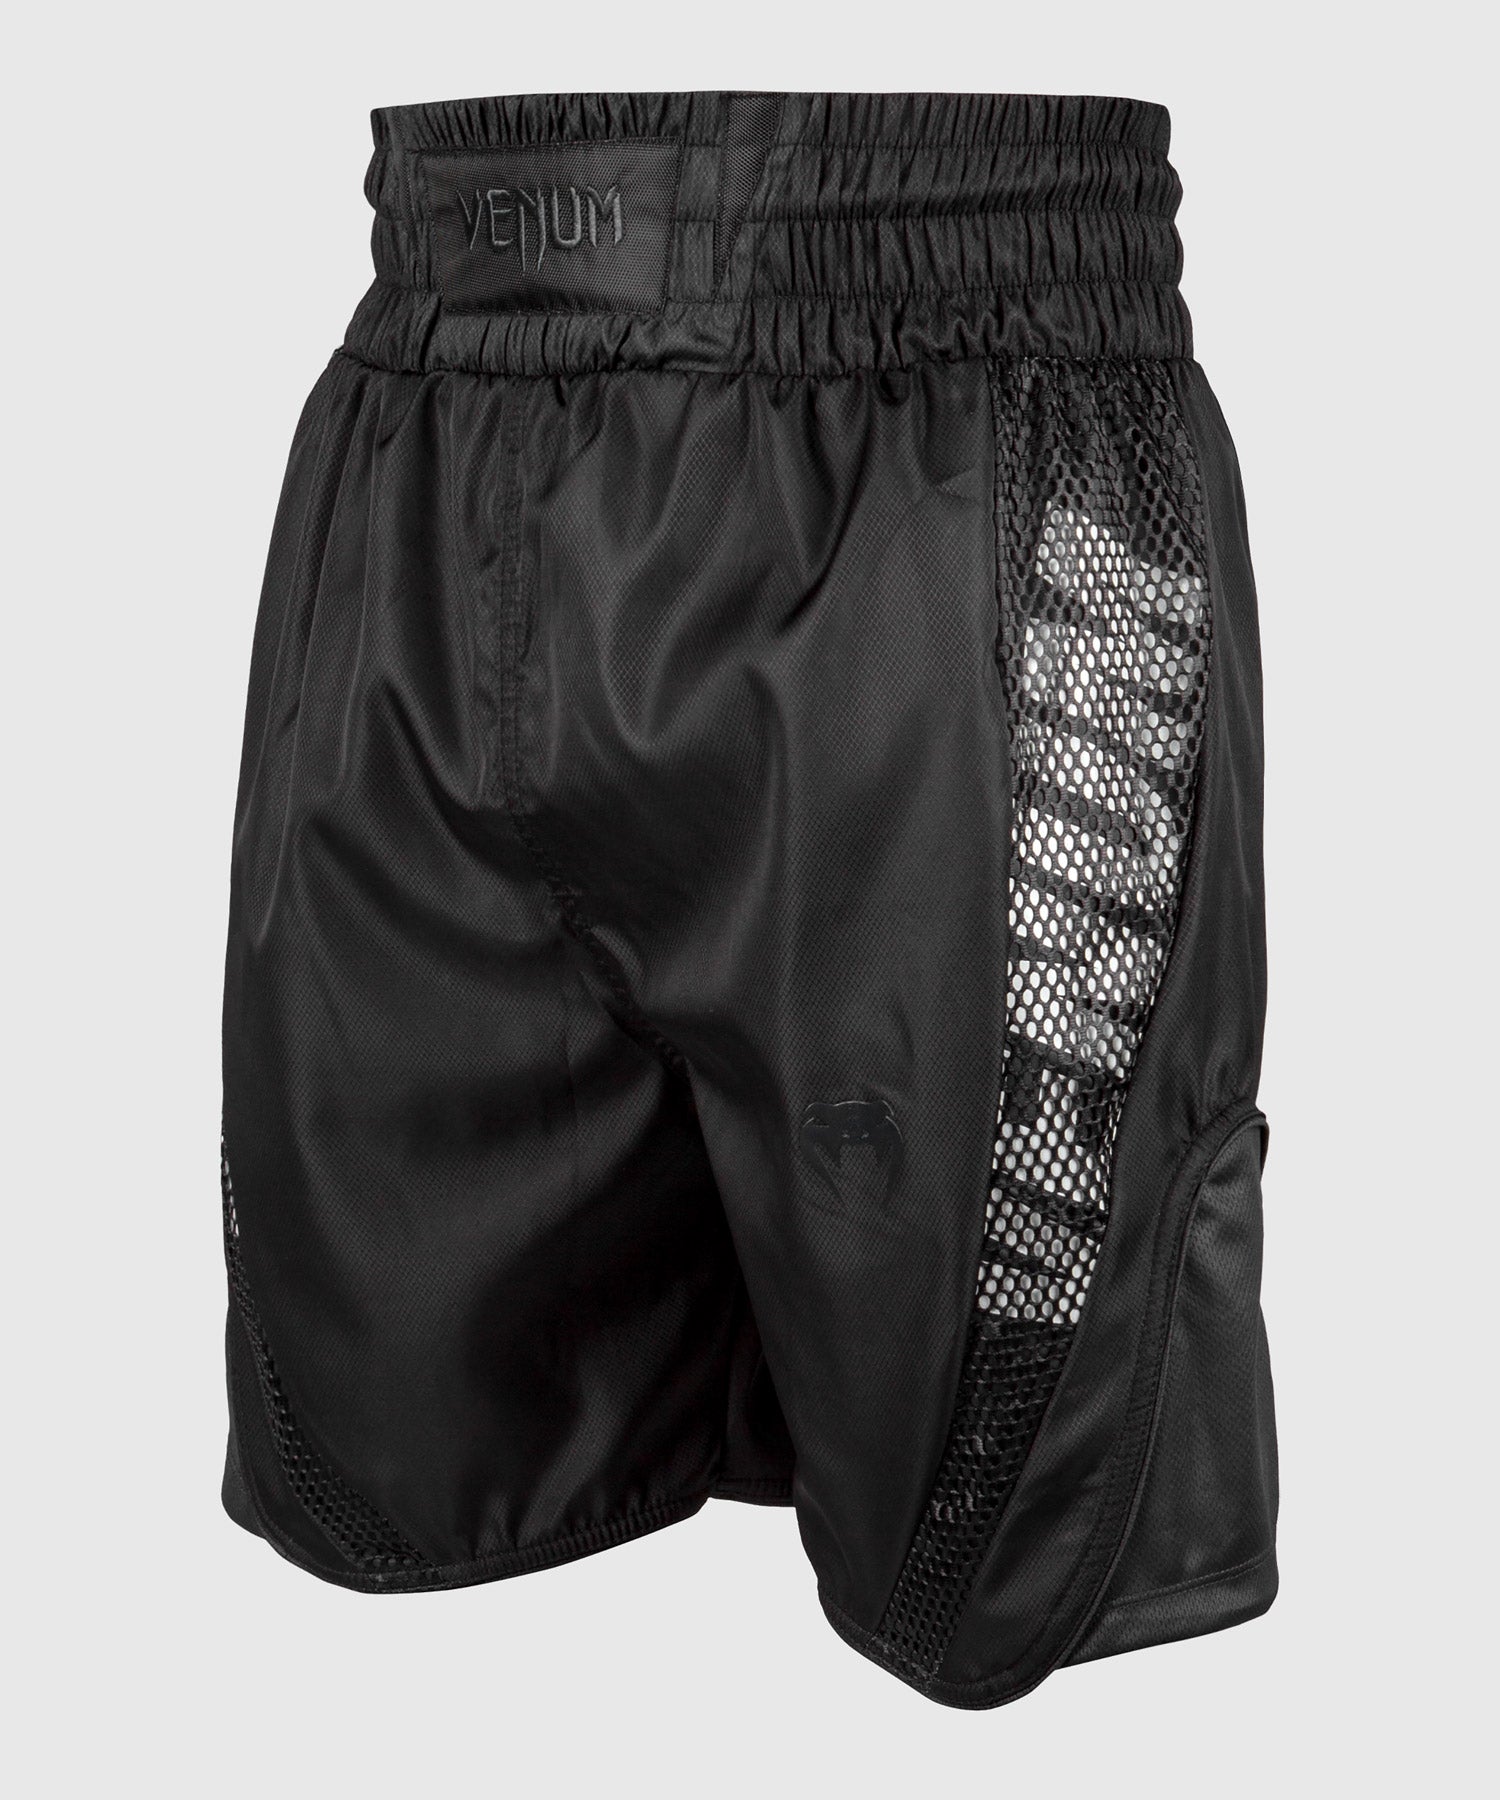 MMA Espartano - Venum pantalón de Boxeo XL + Cabezal Élite +